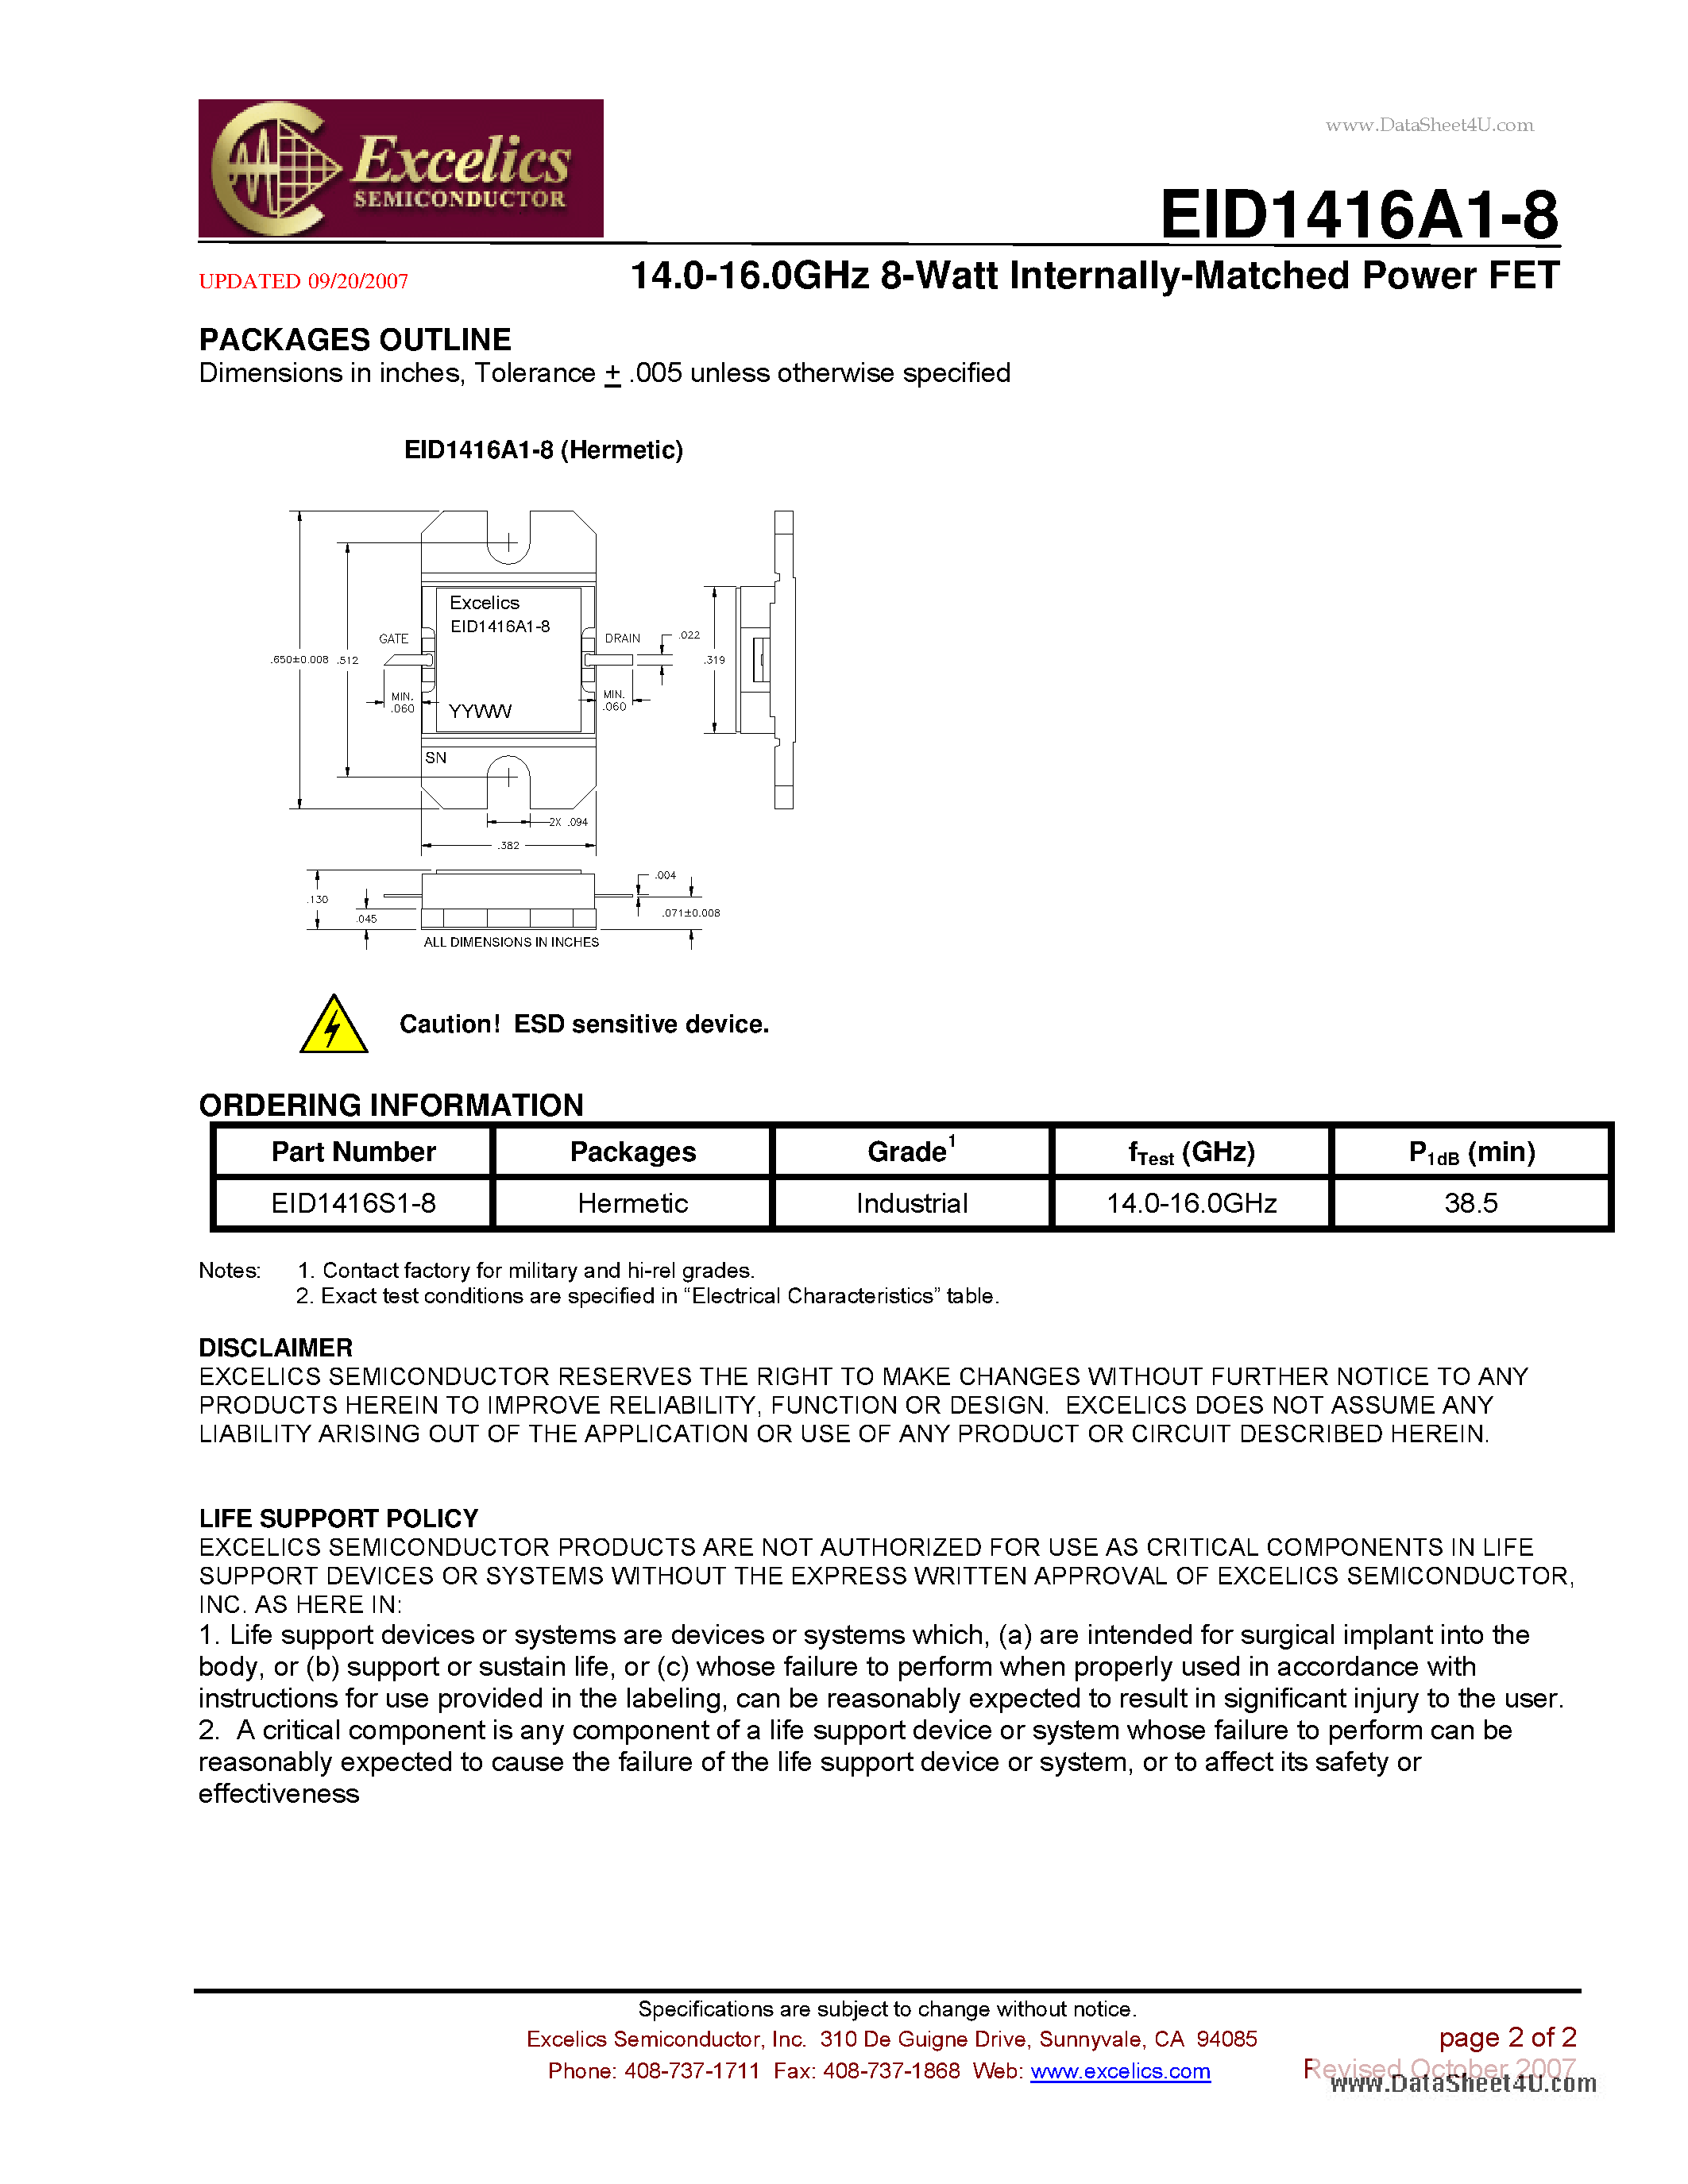 Даташит EID1416A1-8 - 14.0-16.0 GHz 8-Watt Internally-Matched Power FET страница 2